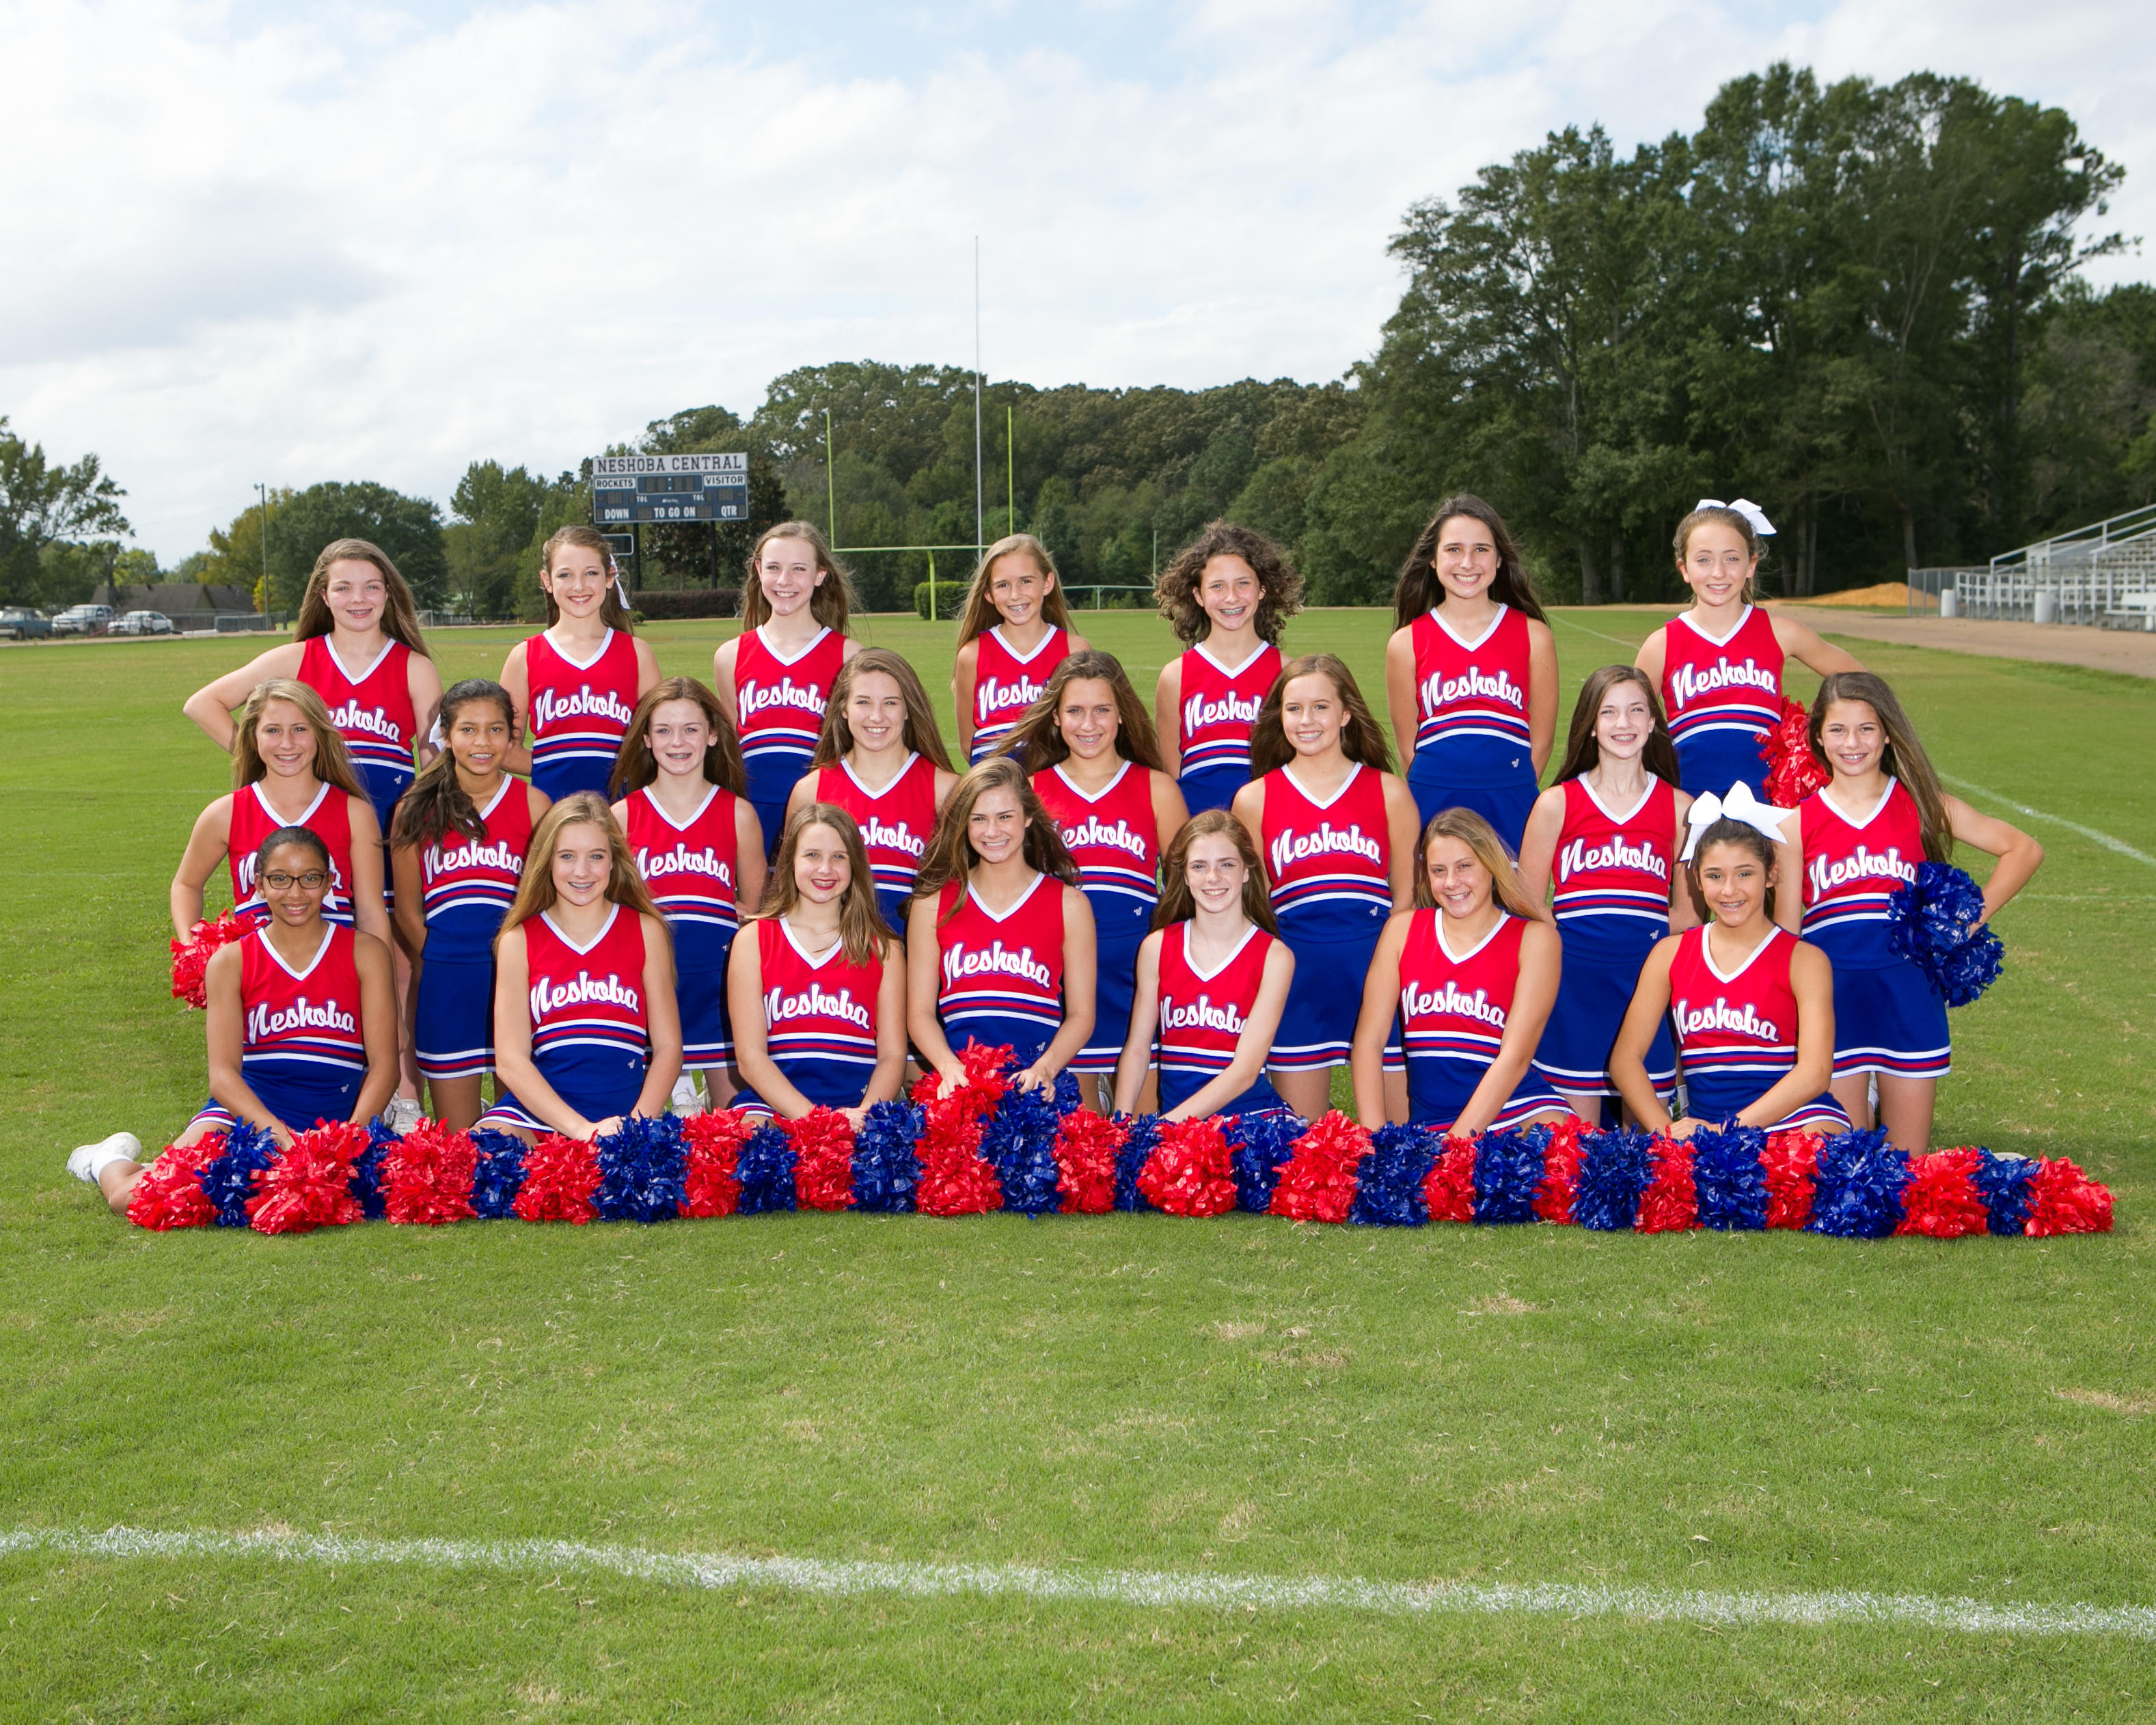 JV cheerleaders in group photo